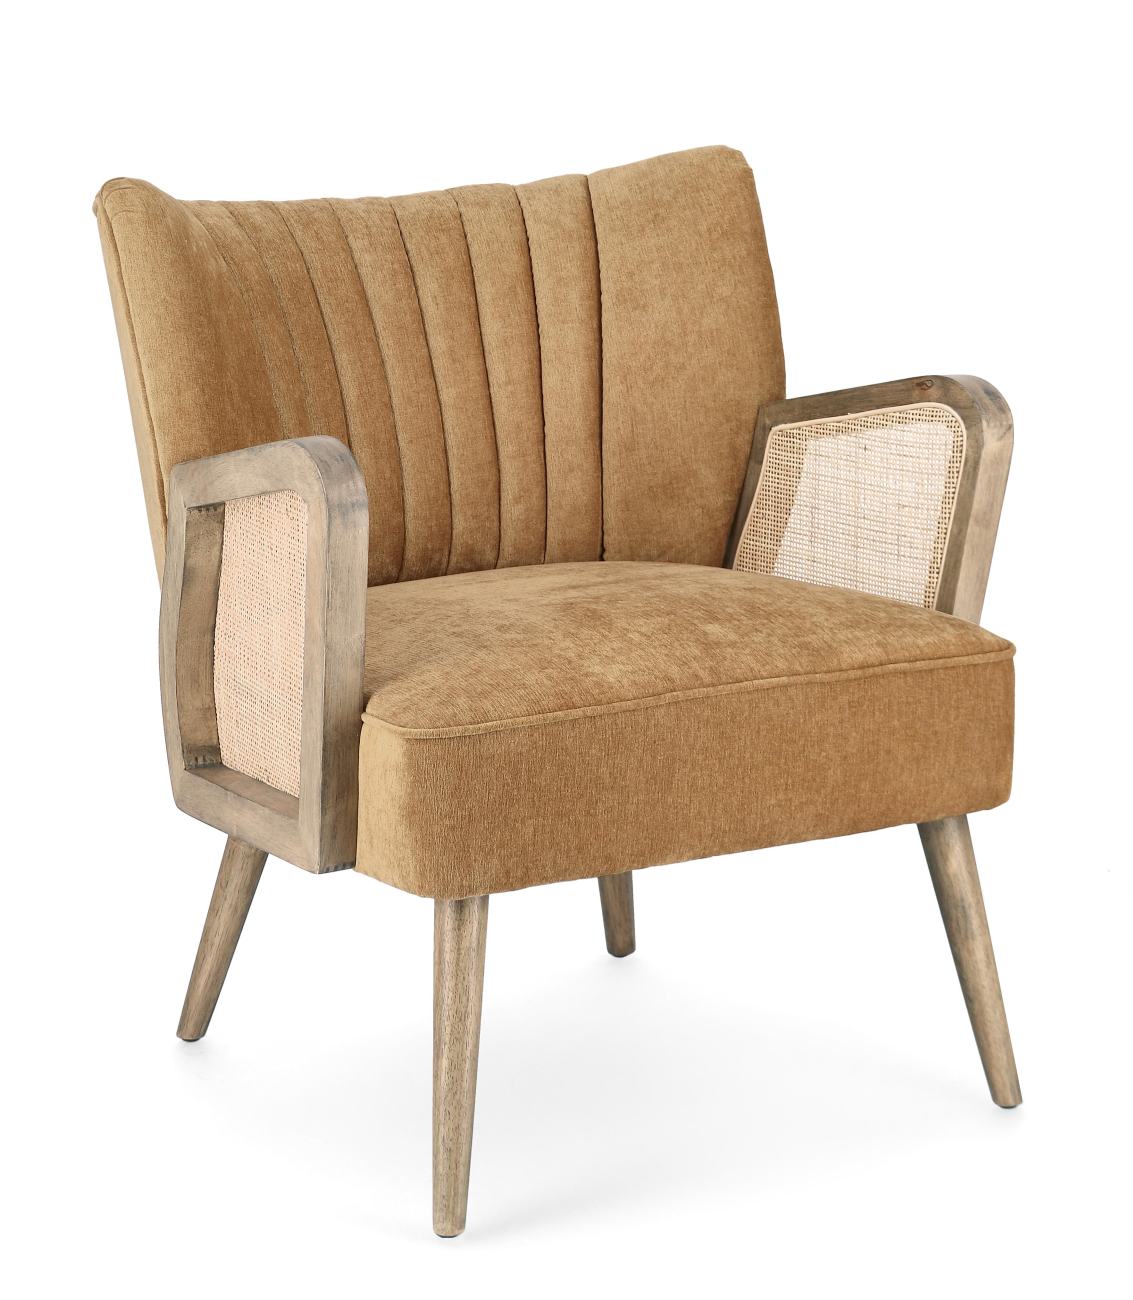 Der Sessel Virna überzeugt mit seinem modernen Stil. Gefertigt wurde er aus einem Stoff-Bezug, welcher einen Senf Farbton besitzt. Das Gestell ist aus Kautschukholz und hat eine braune Farbe. Der Sessel verfügt über eine Armlehne.